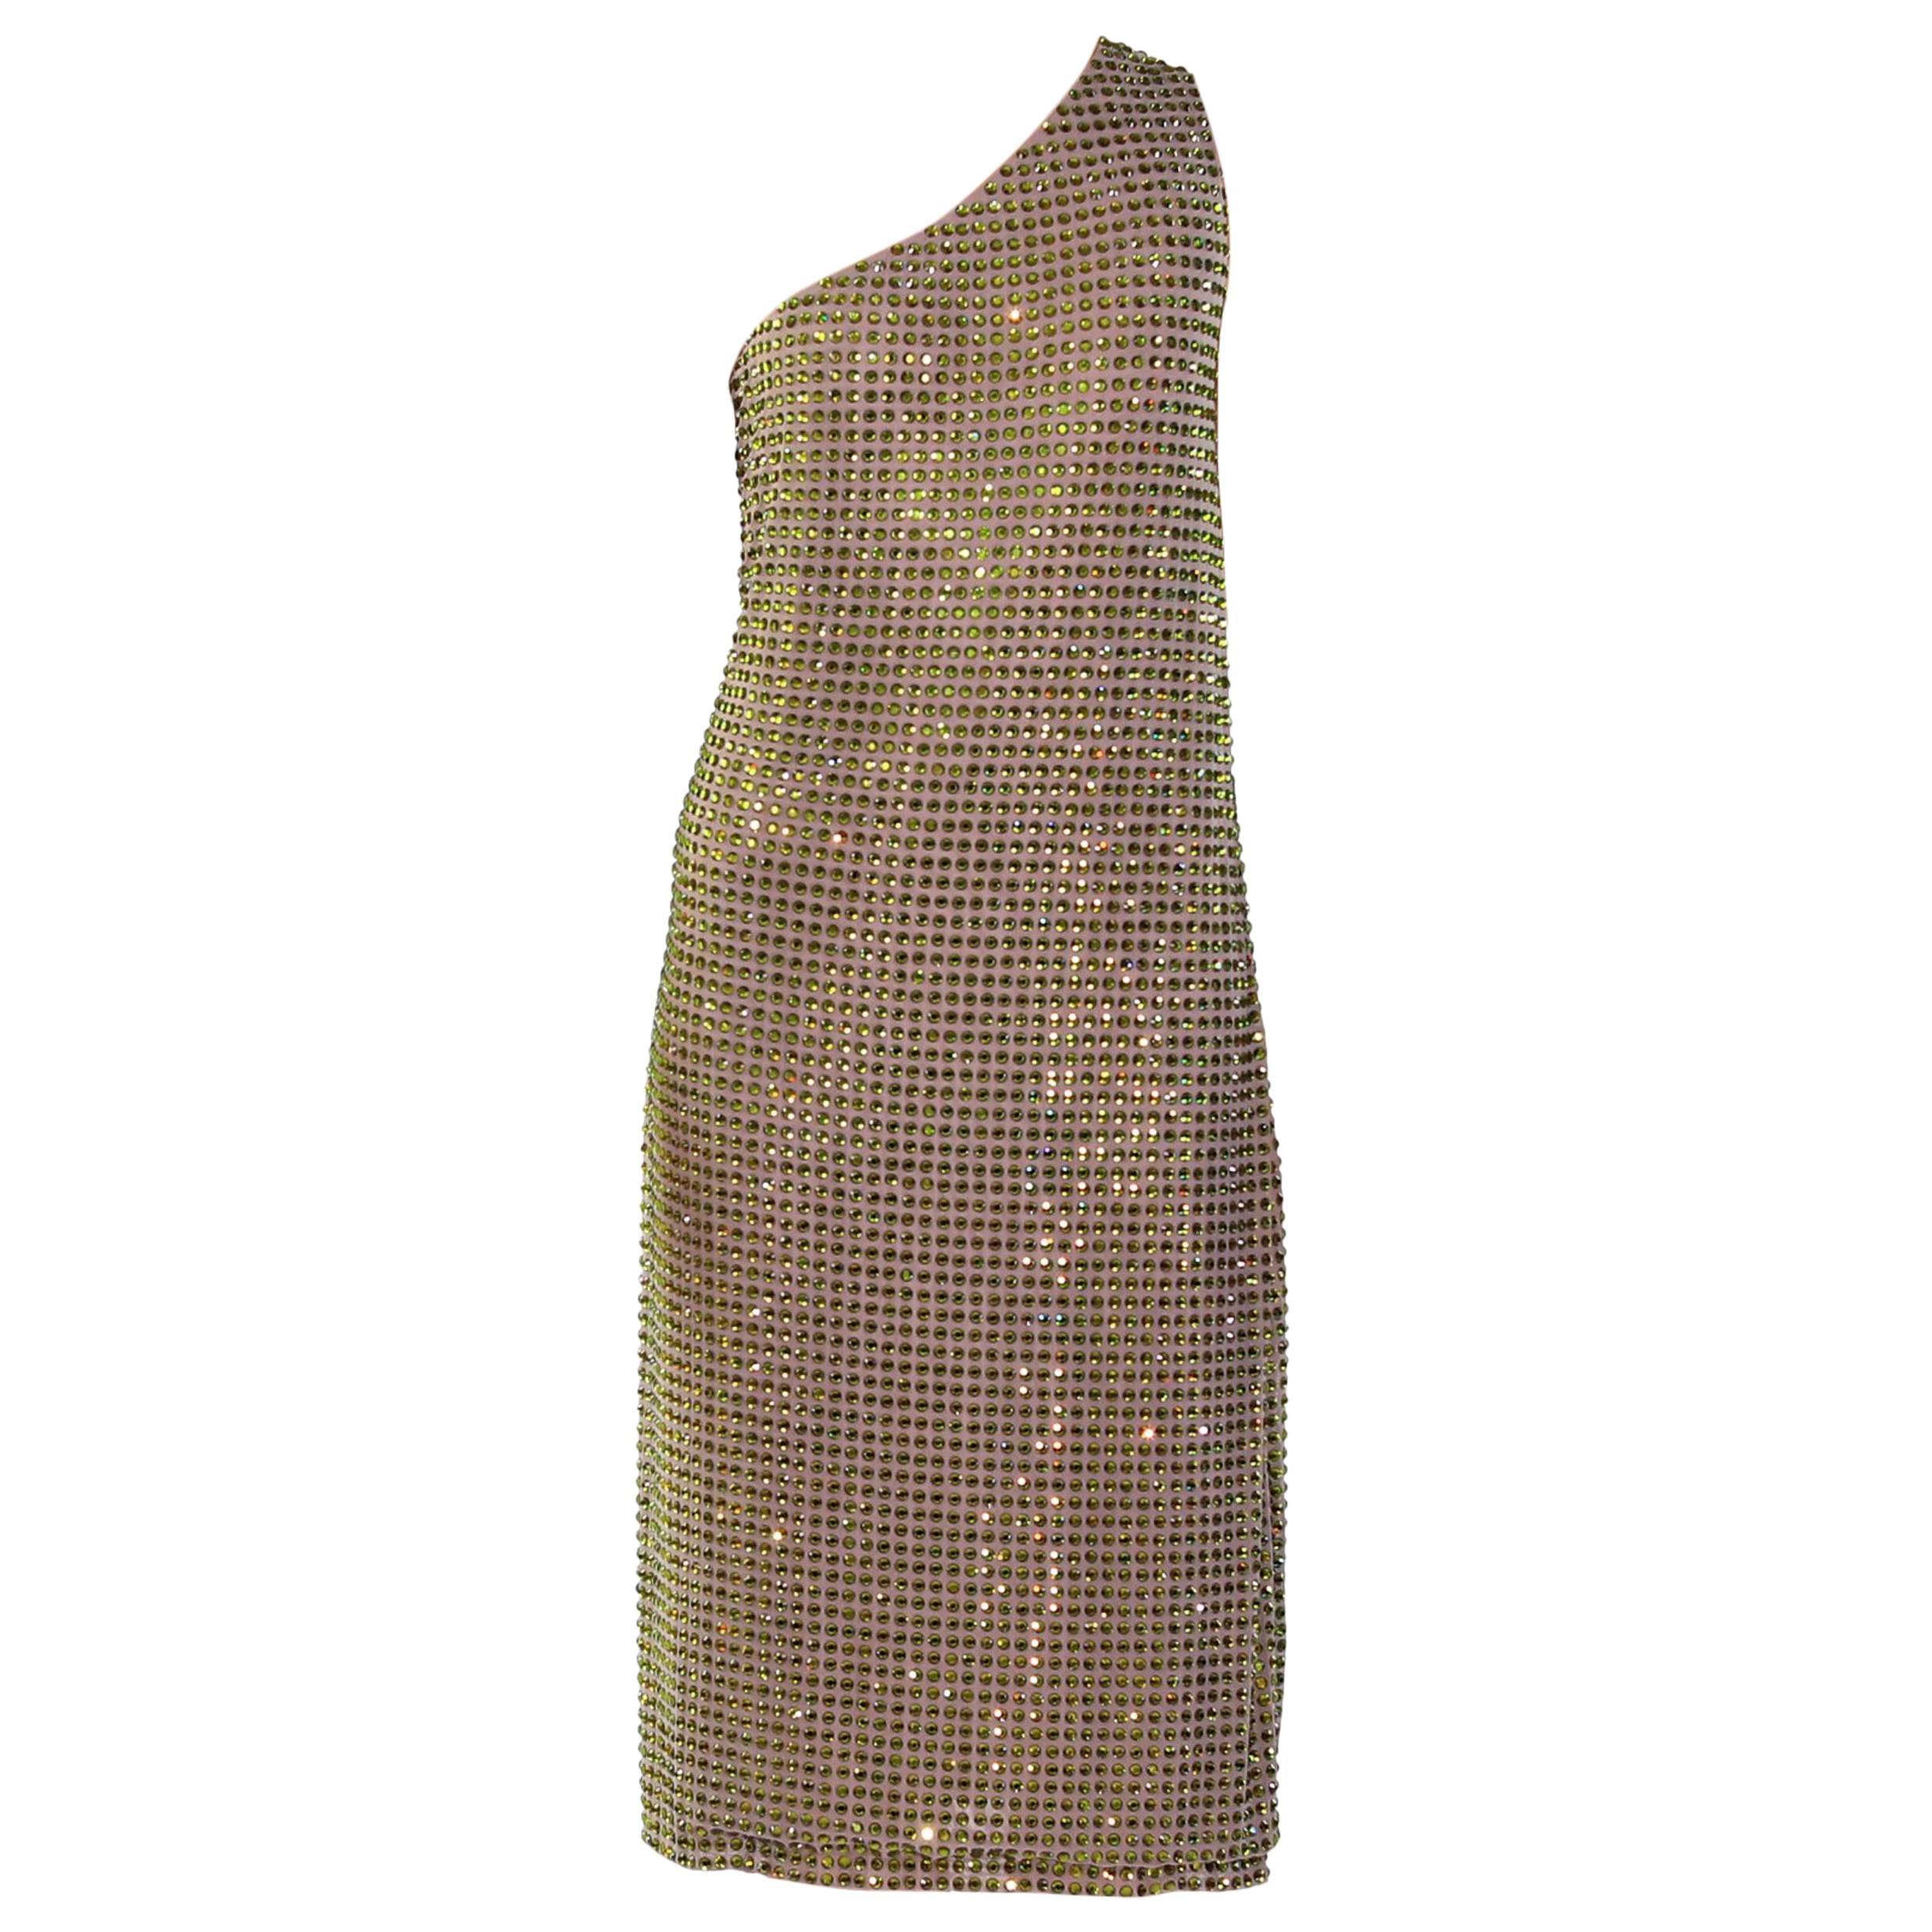 S/S 2000 Tom Ford for Gucci Crystal Embellished One Shoulder Dress